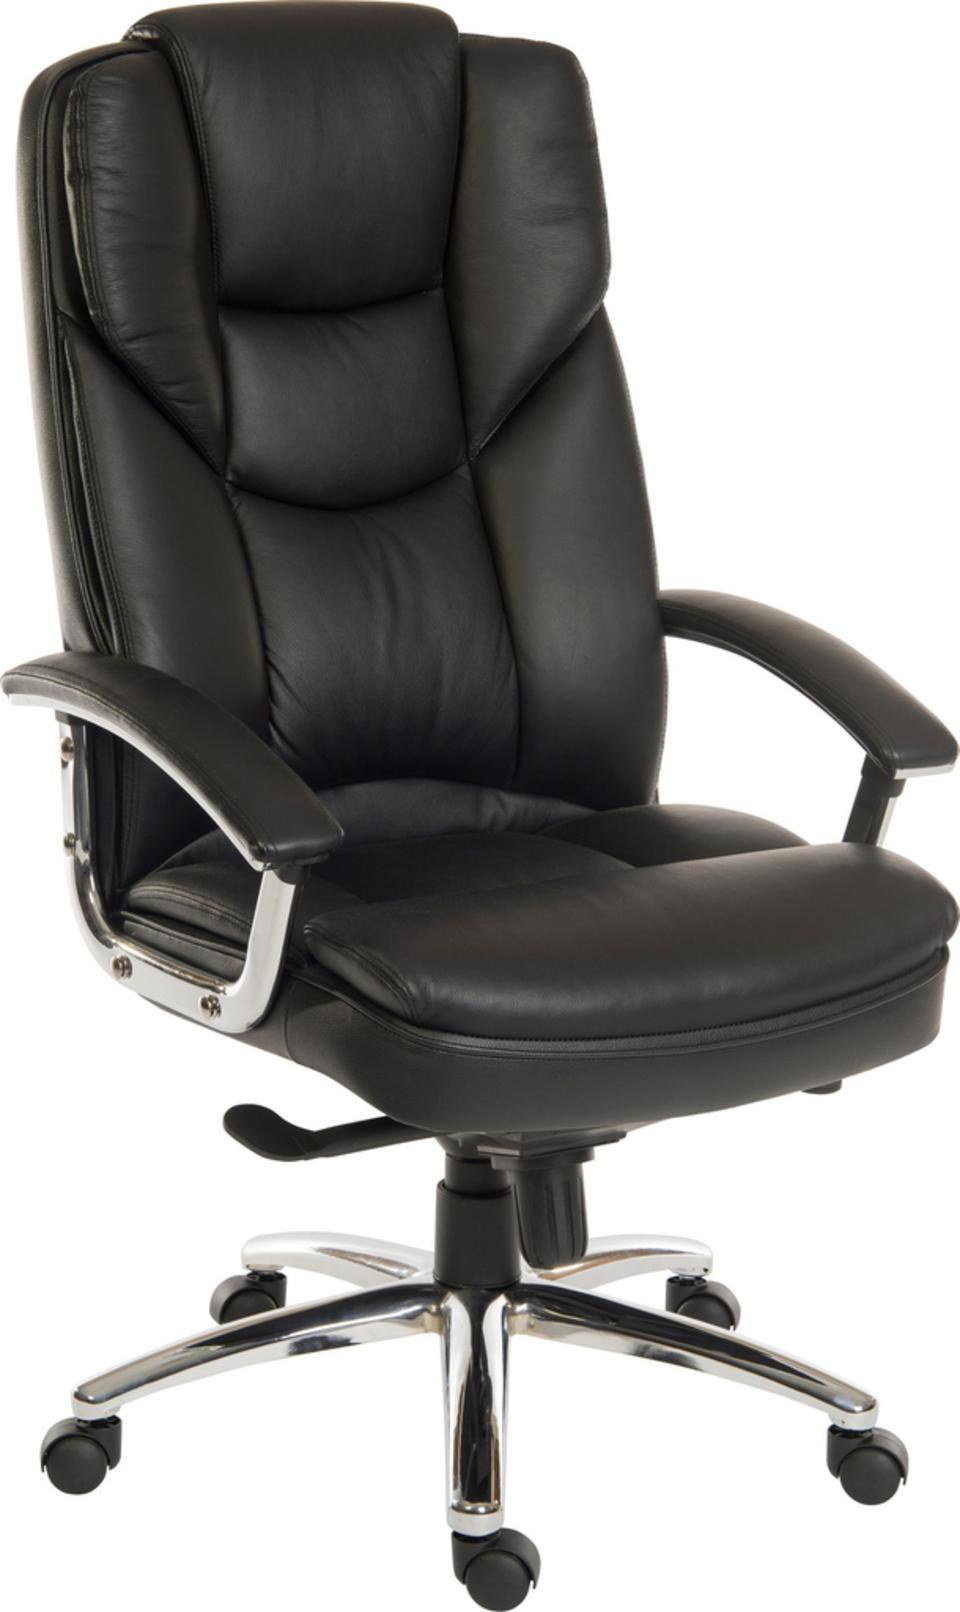 Skyline Leather Executive Chair